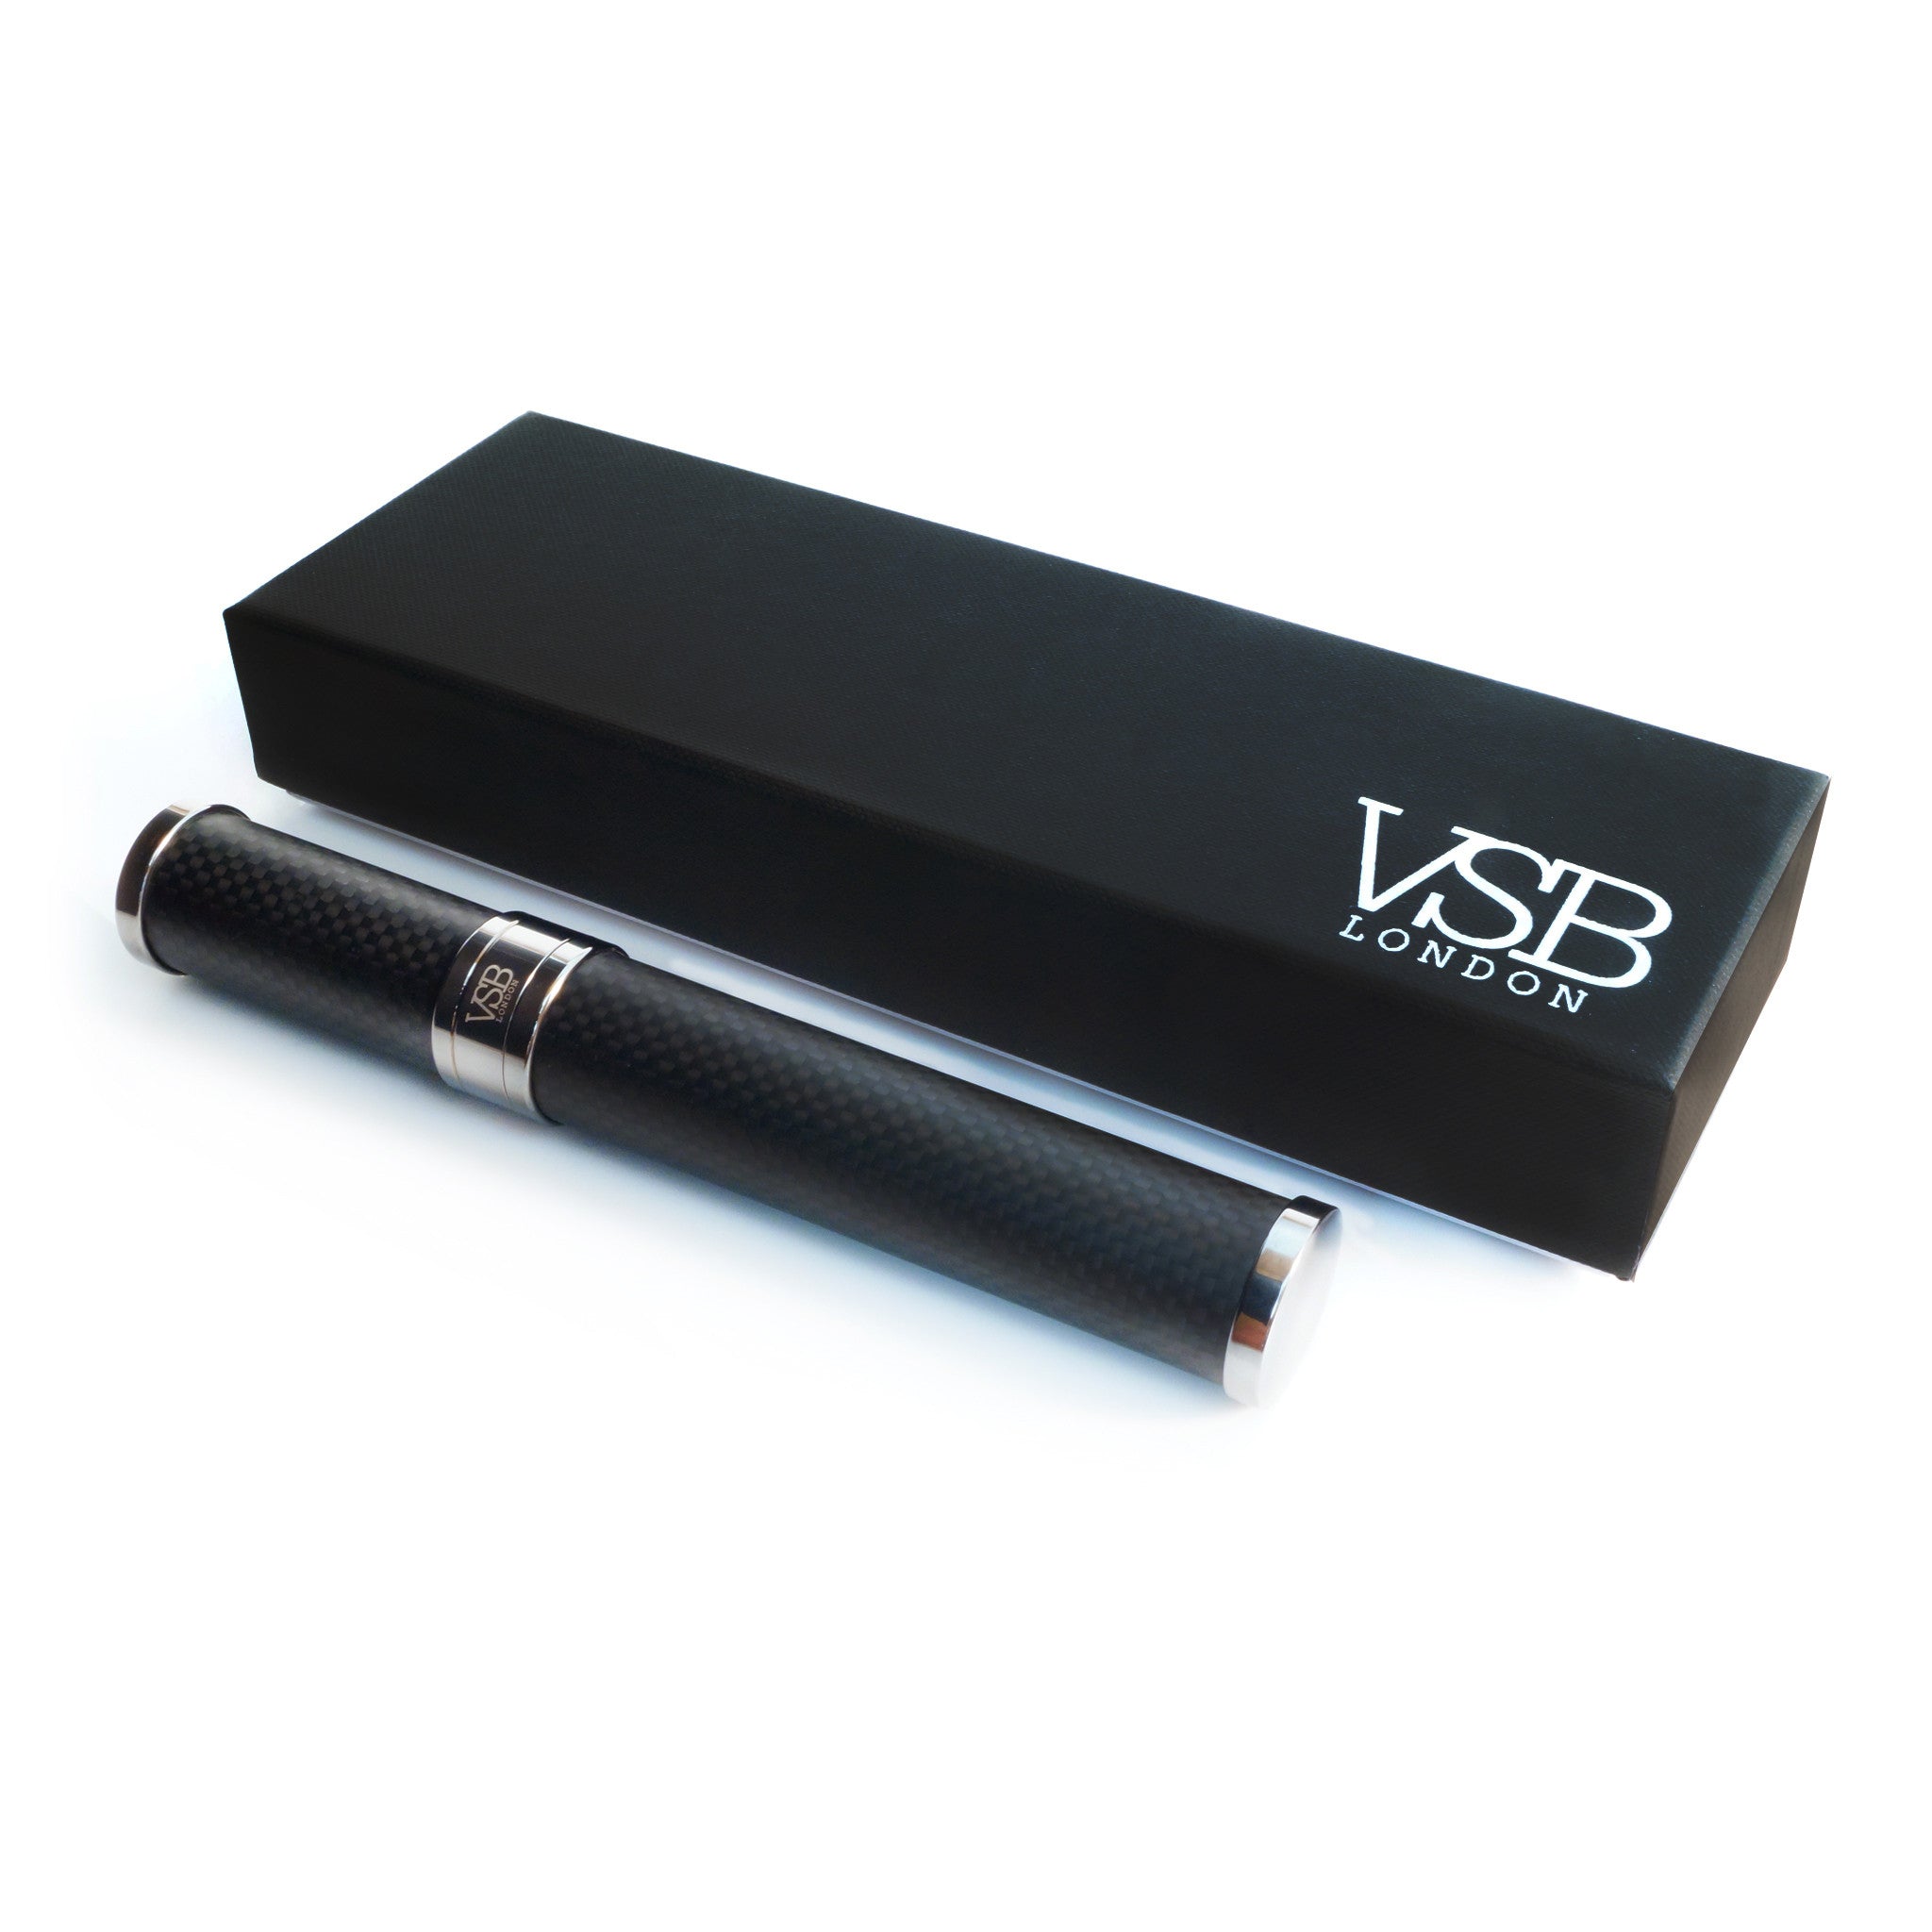 VSB London Matt Carbon Fibre with Black Chrome Cigar Tube